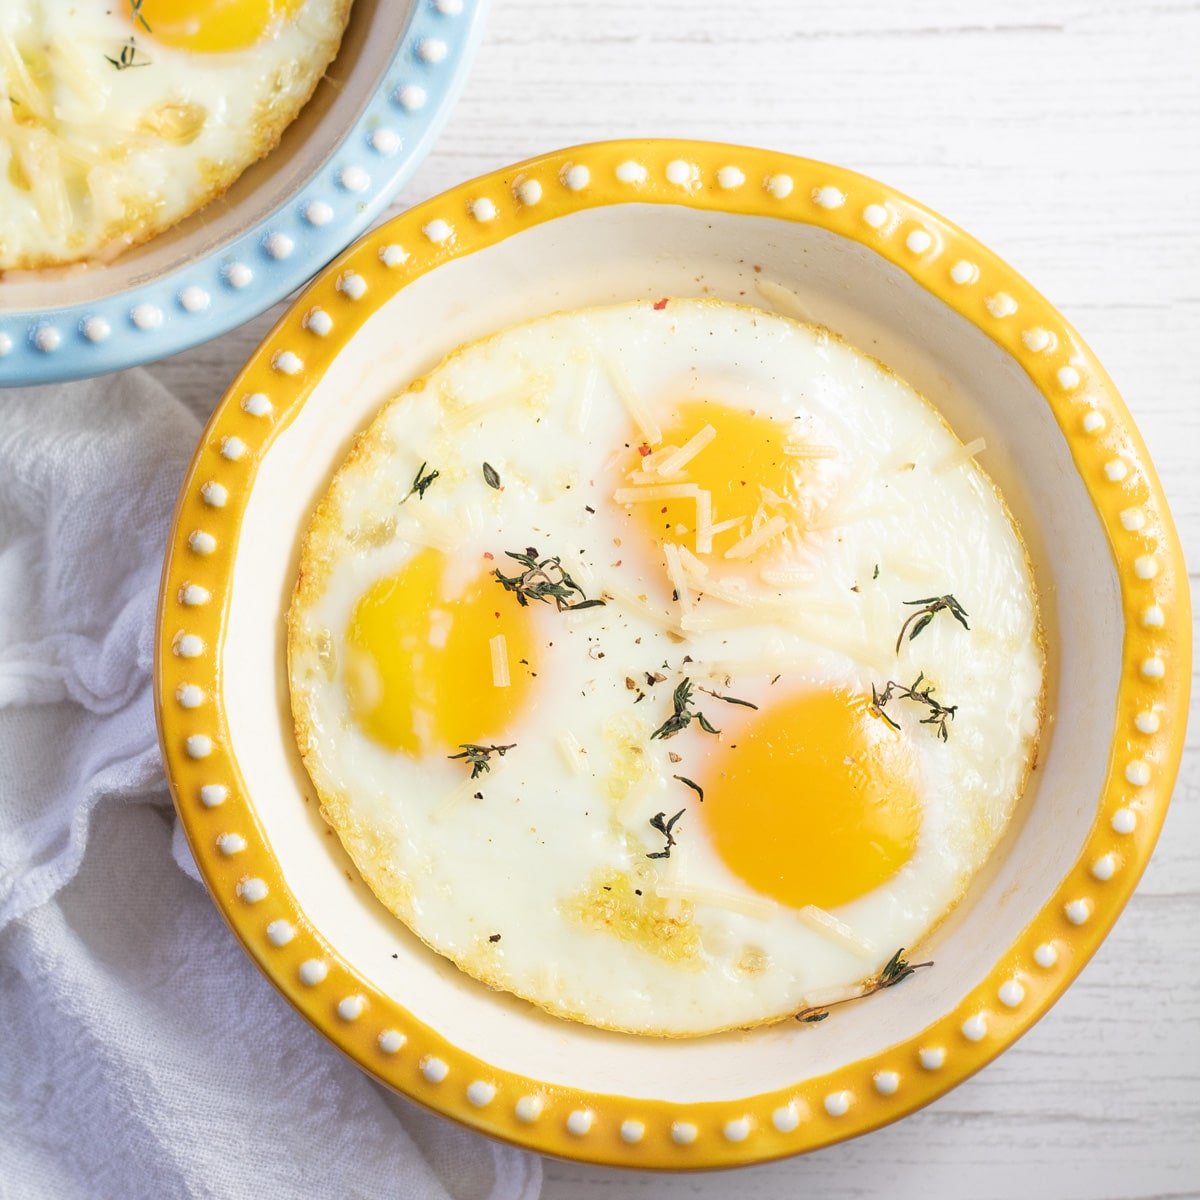 Le migliori uova al forno da preparare per qualsiasi colazione mostrate in una teglia poco profonda.